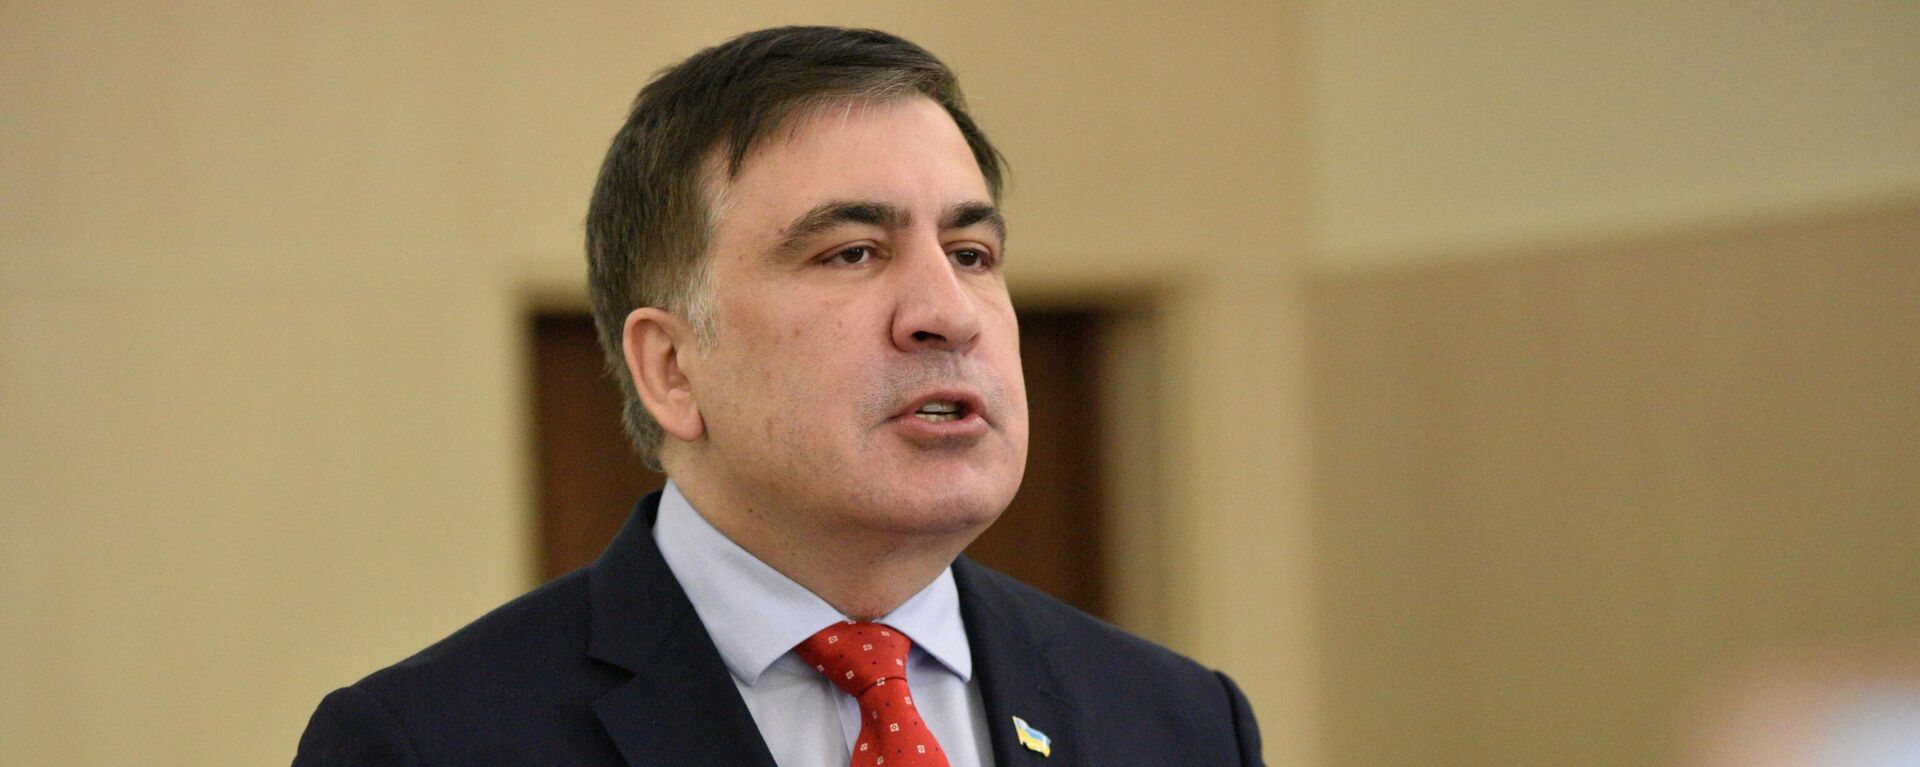 Экс-президент Грузии, бывший губернатор Одесской области Михаил Саакашвили  - Sputnik Азербайджан, 1920, 02.12.2021